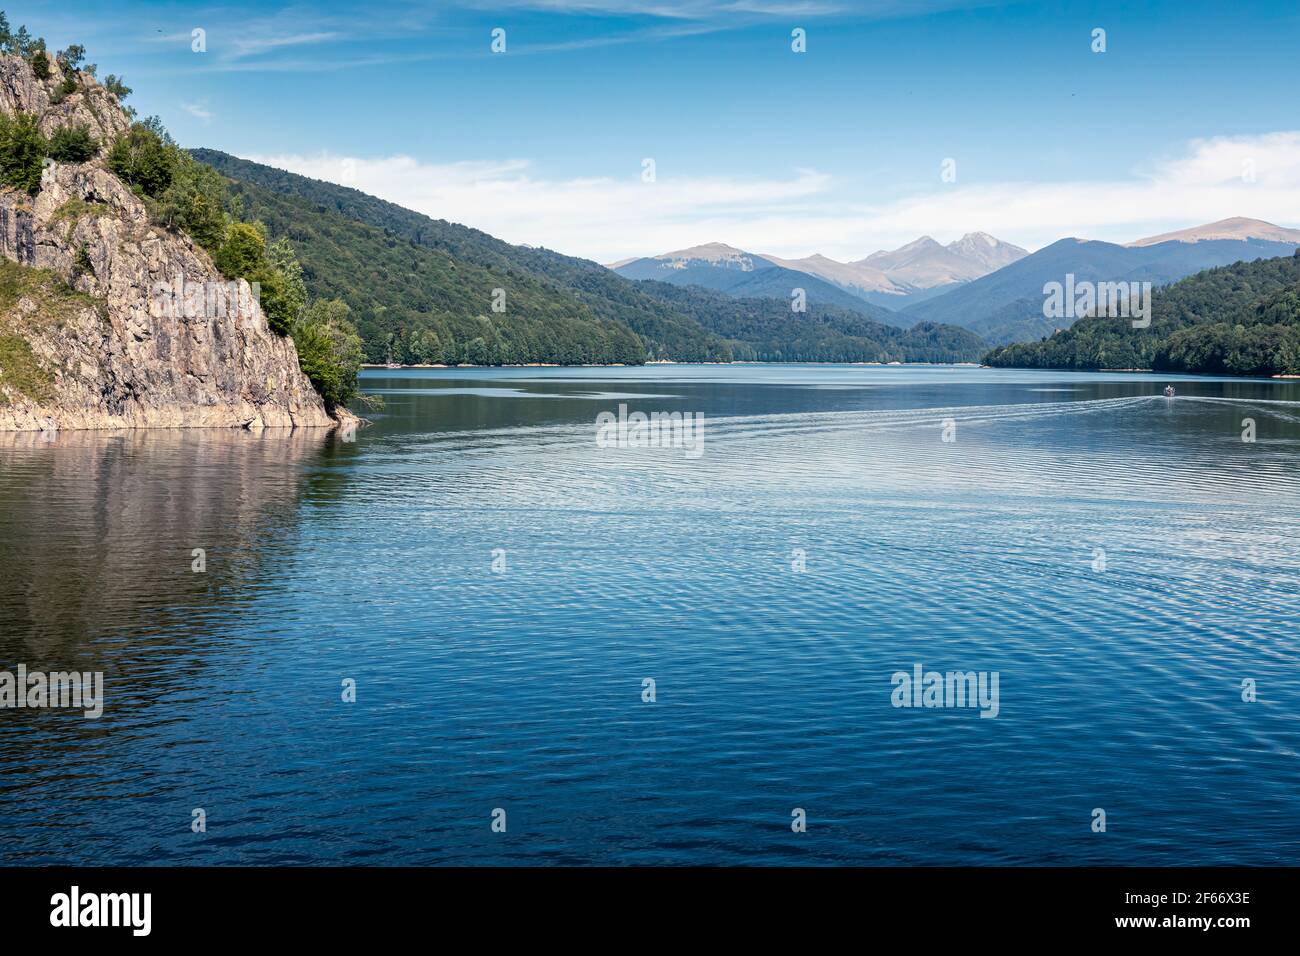 Vue sur le lac Vidraru dans les montagnes Carpathian. Ciel bleu vif et arbres verts. Croisière en bateau sur l'eau. Espace de copie négatif, place pour le texte. T Banque D'Images